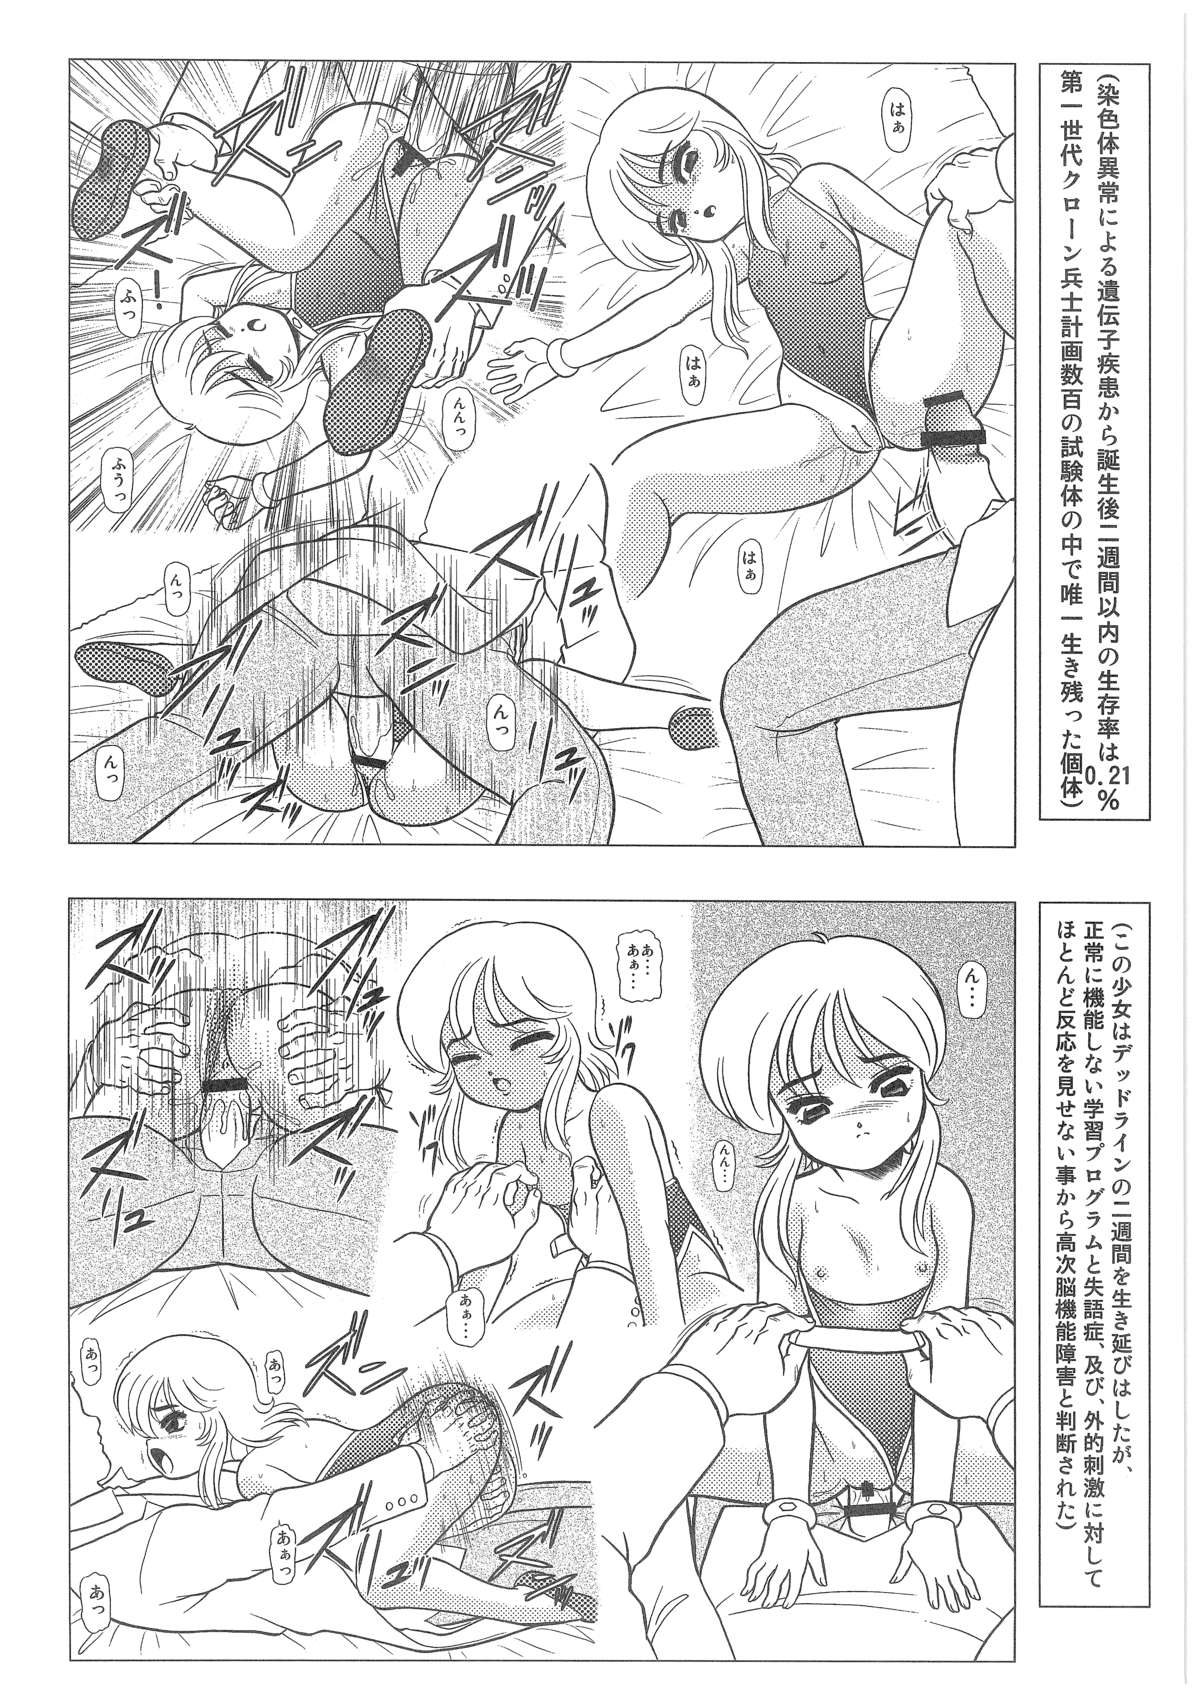 [Dakimakuma, Jingai Makyou Club (WING☆BIRD)] CHARA EMU W☆B010 GONDAM 008 ZZ-W-F91 (Various) page 13 full